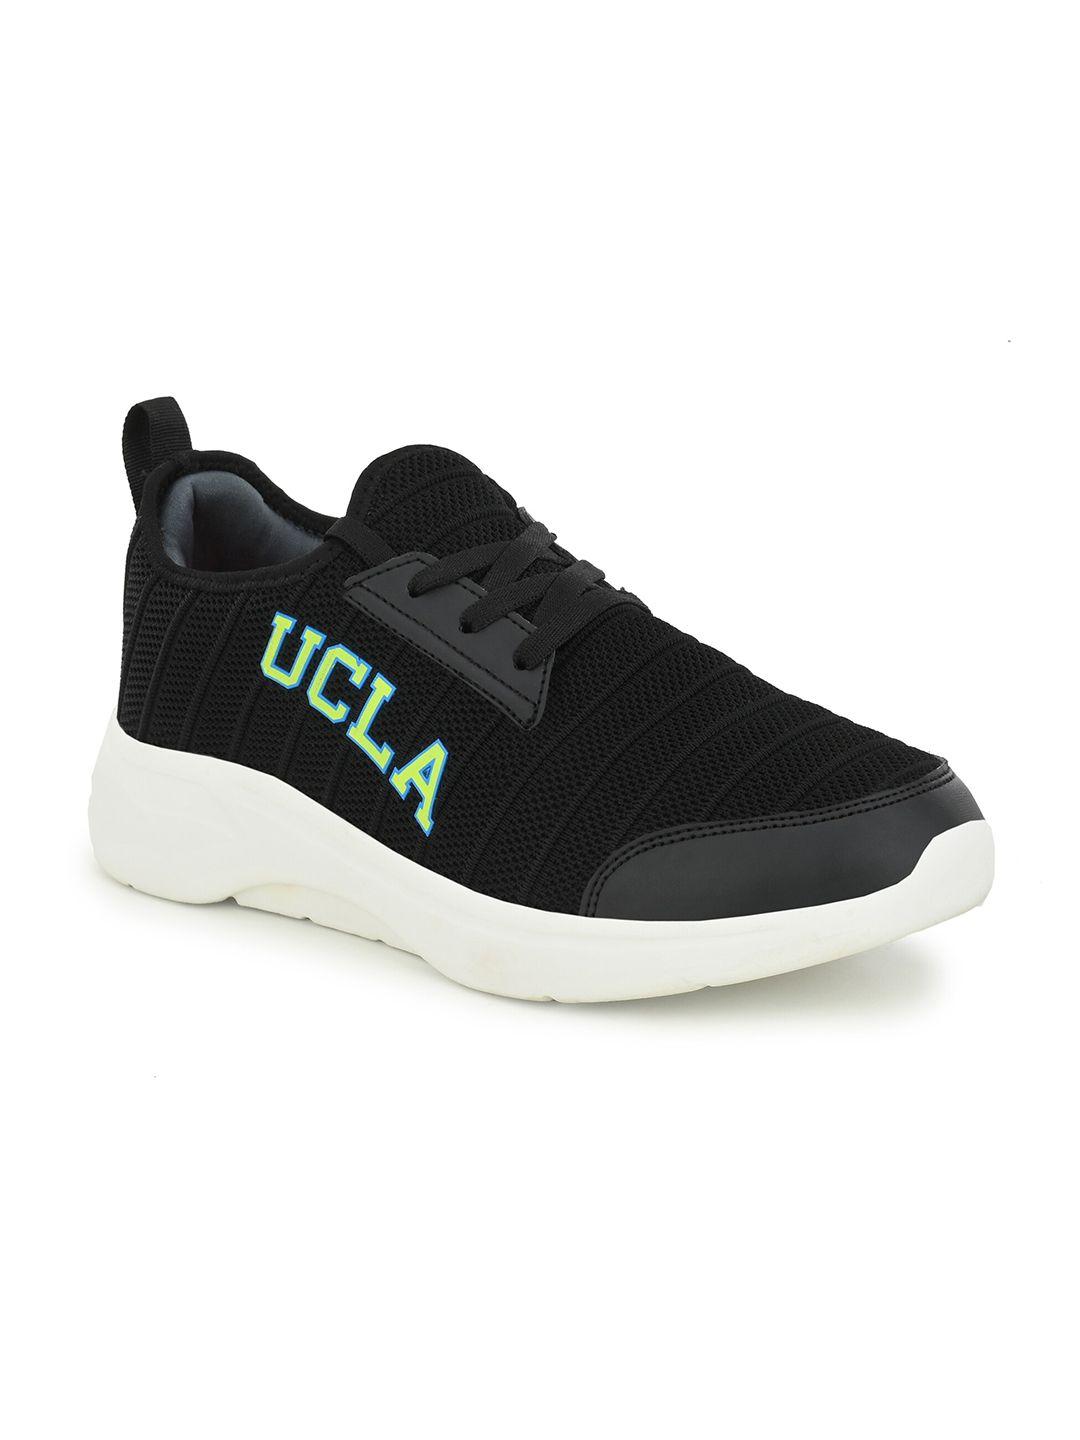 ucla-men-black-&-white-running-non-marking-shoes